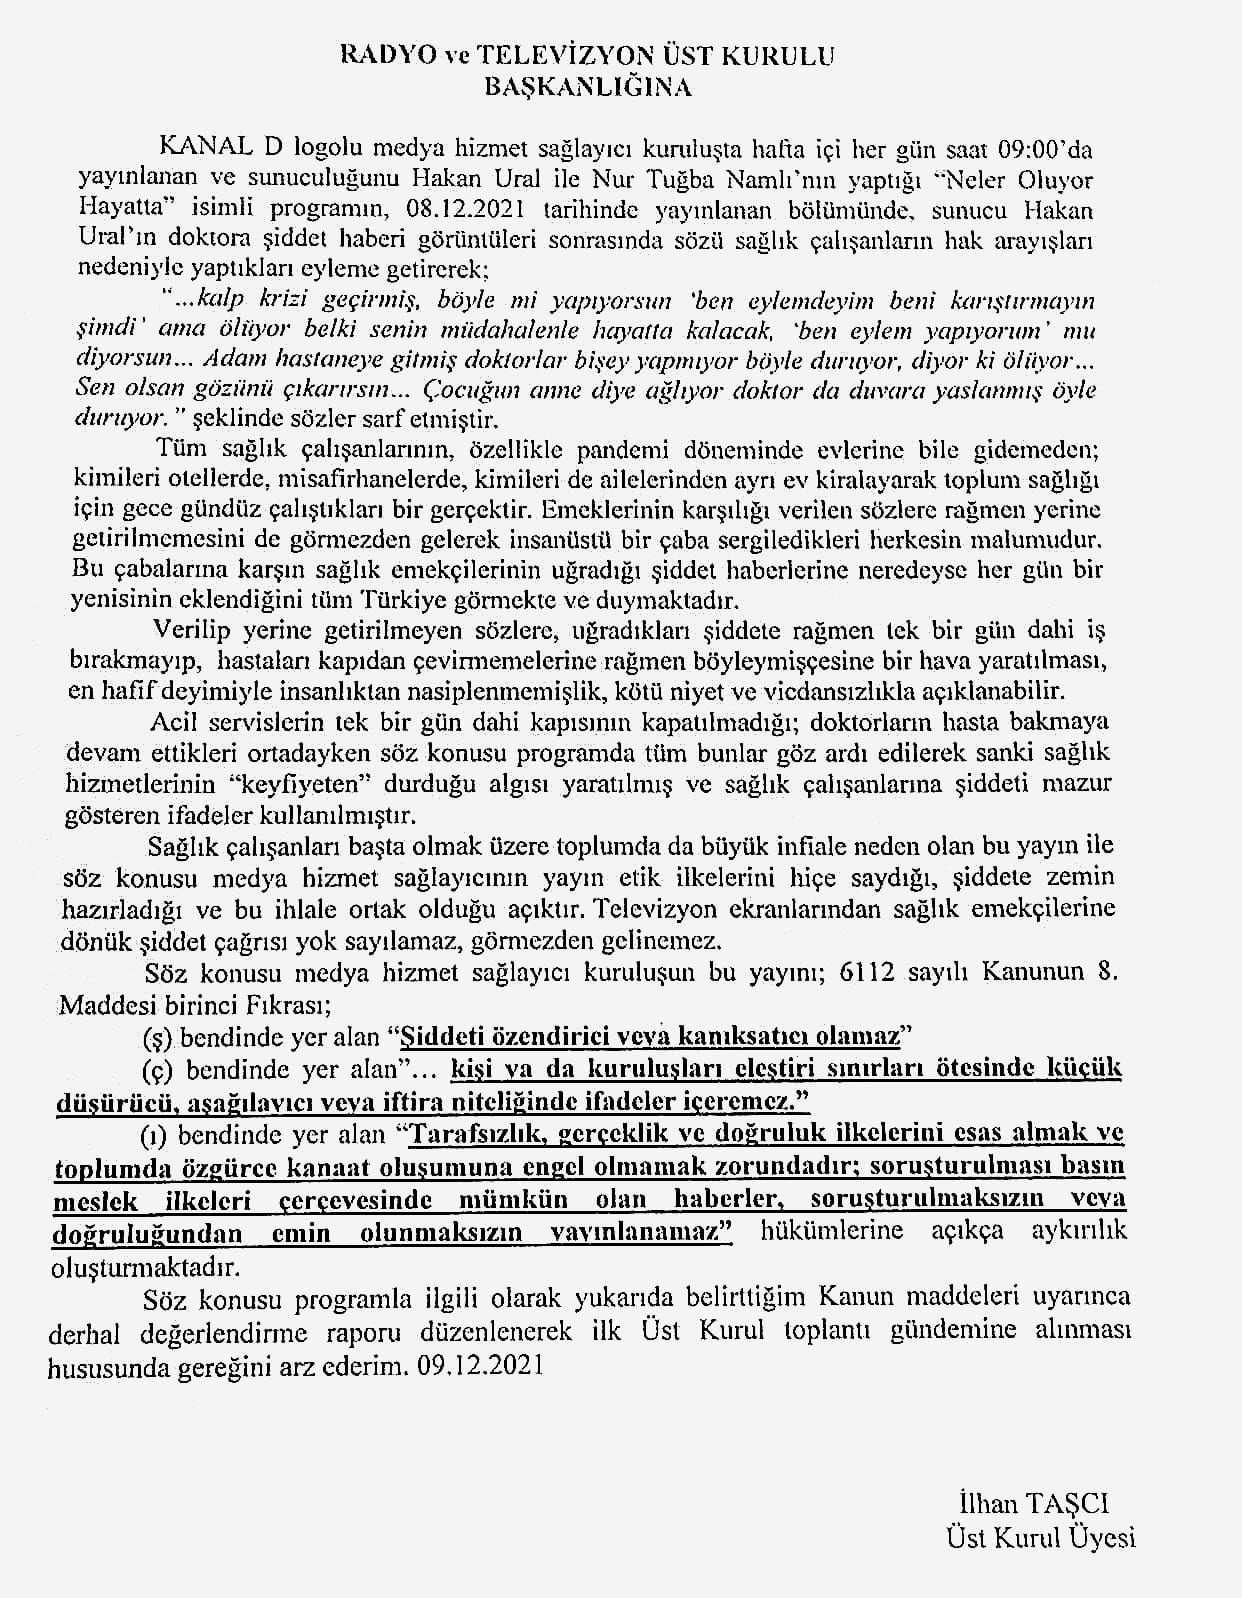 İlhan Taşcı'dan RTÜK'e Hakan Ural'ın sözleri hakkında inceleme talebi